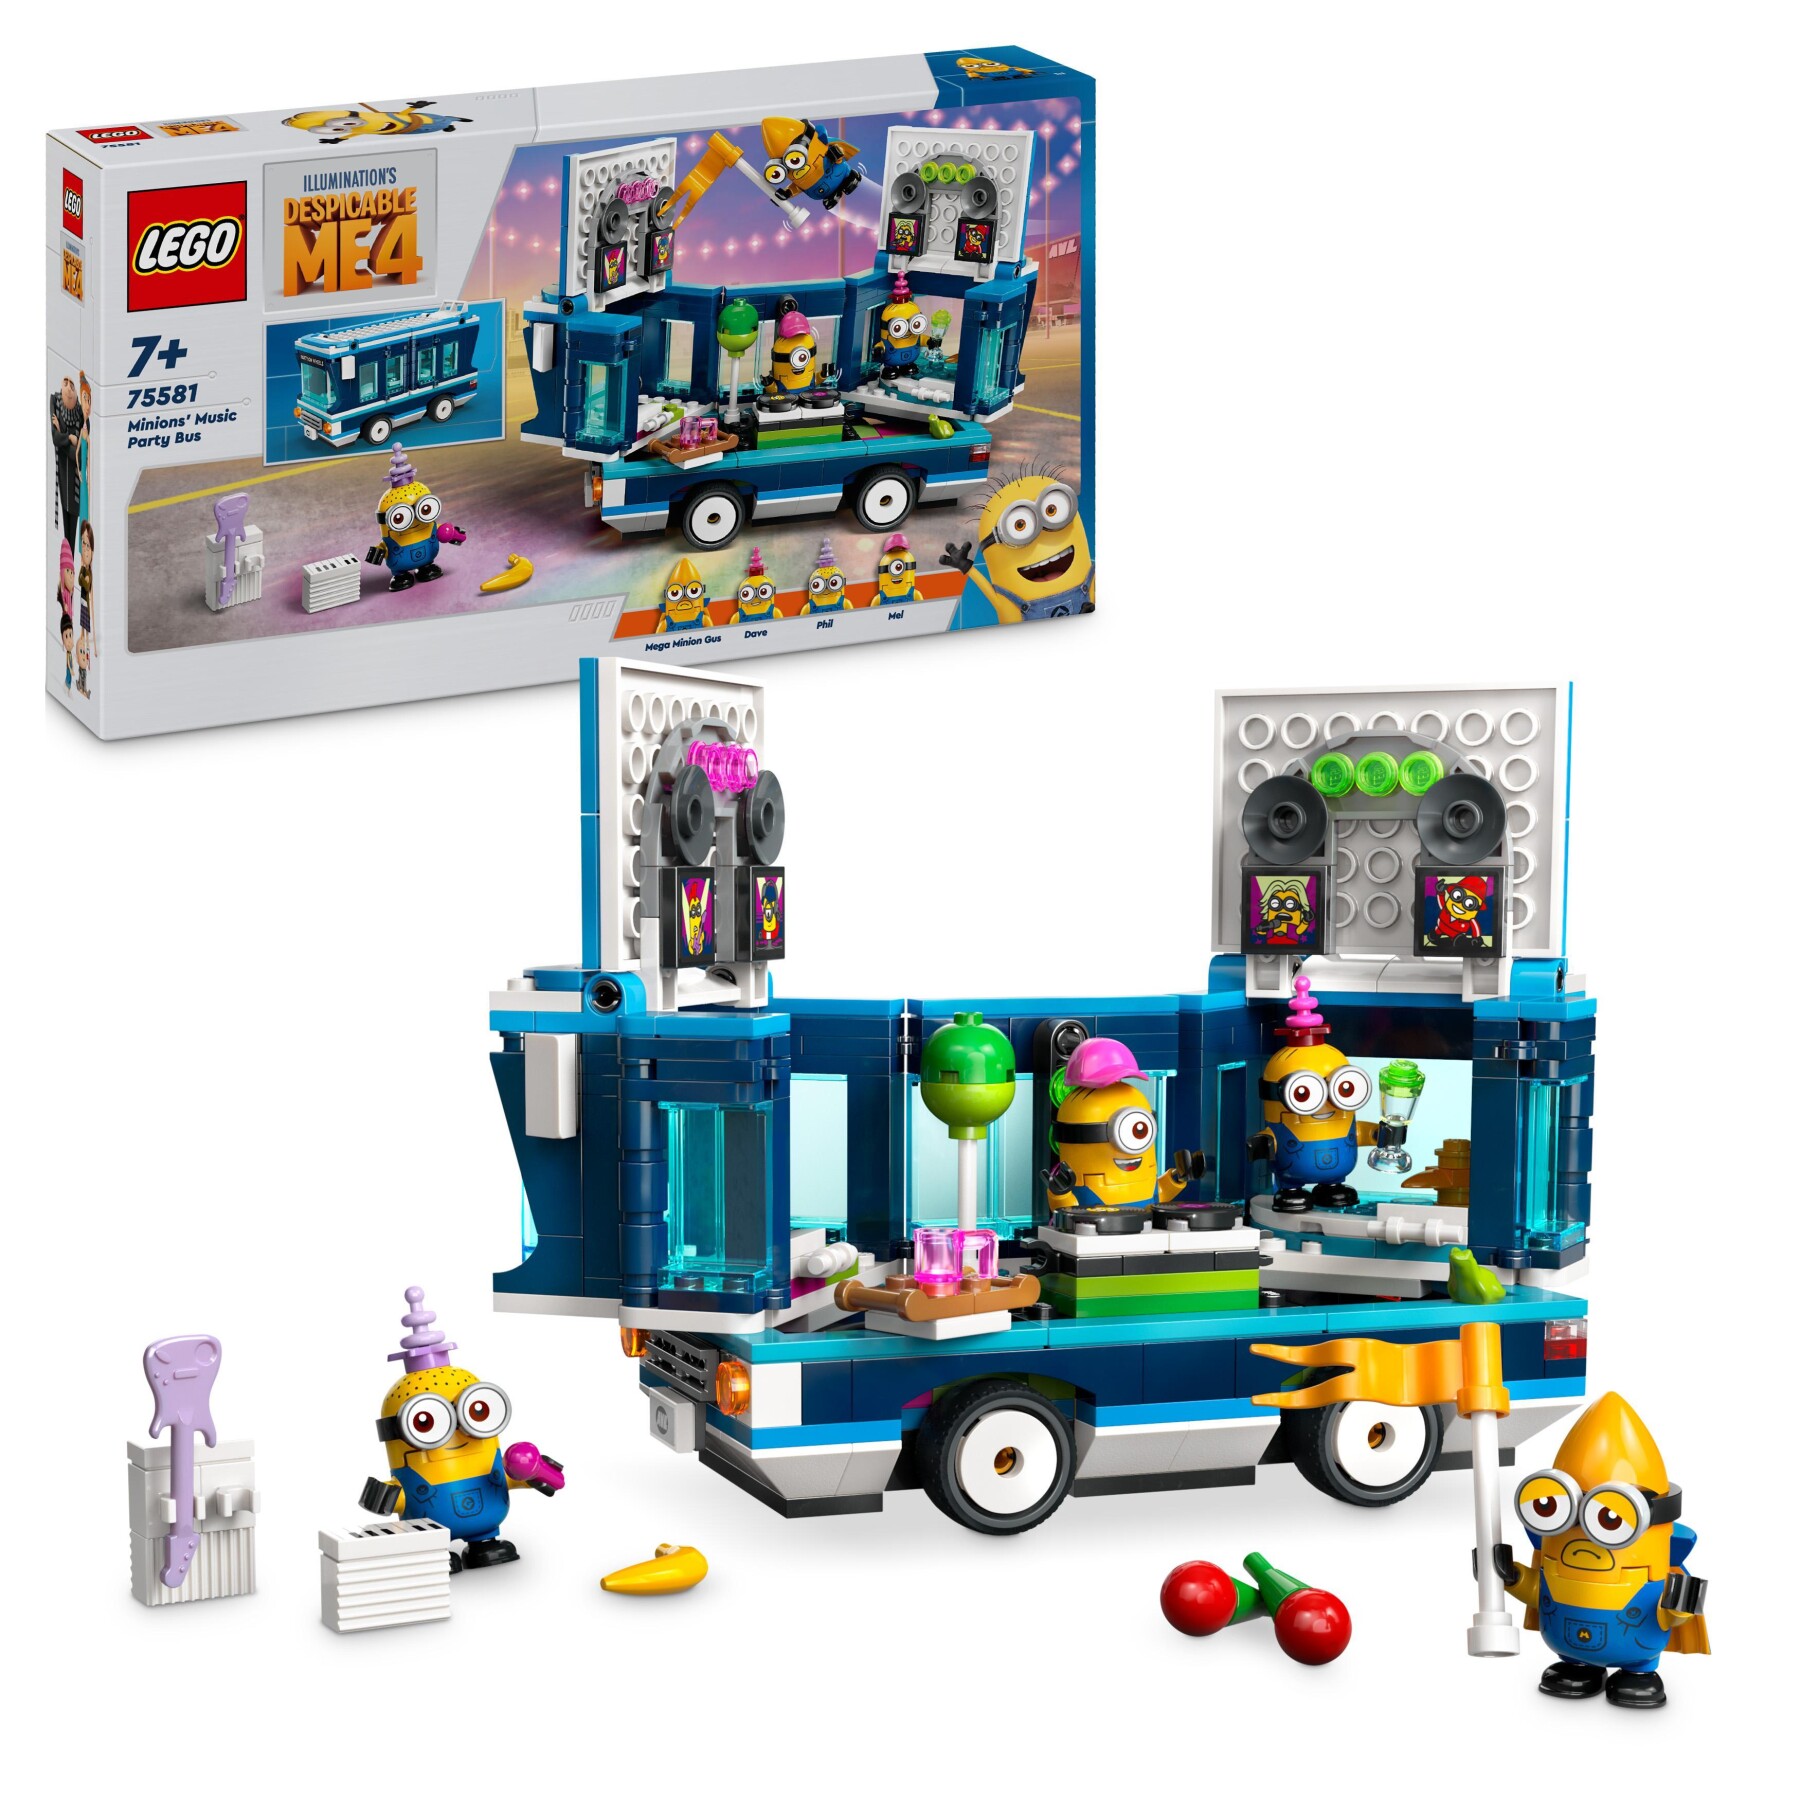 Lego cattivissimo me 75581 il party bus musicale dei minions, set dal film con autobus giocattolo da costruire per bambini 7+ - MINIONS